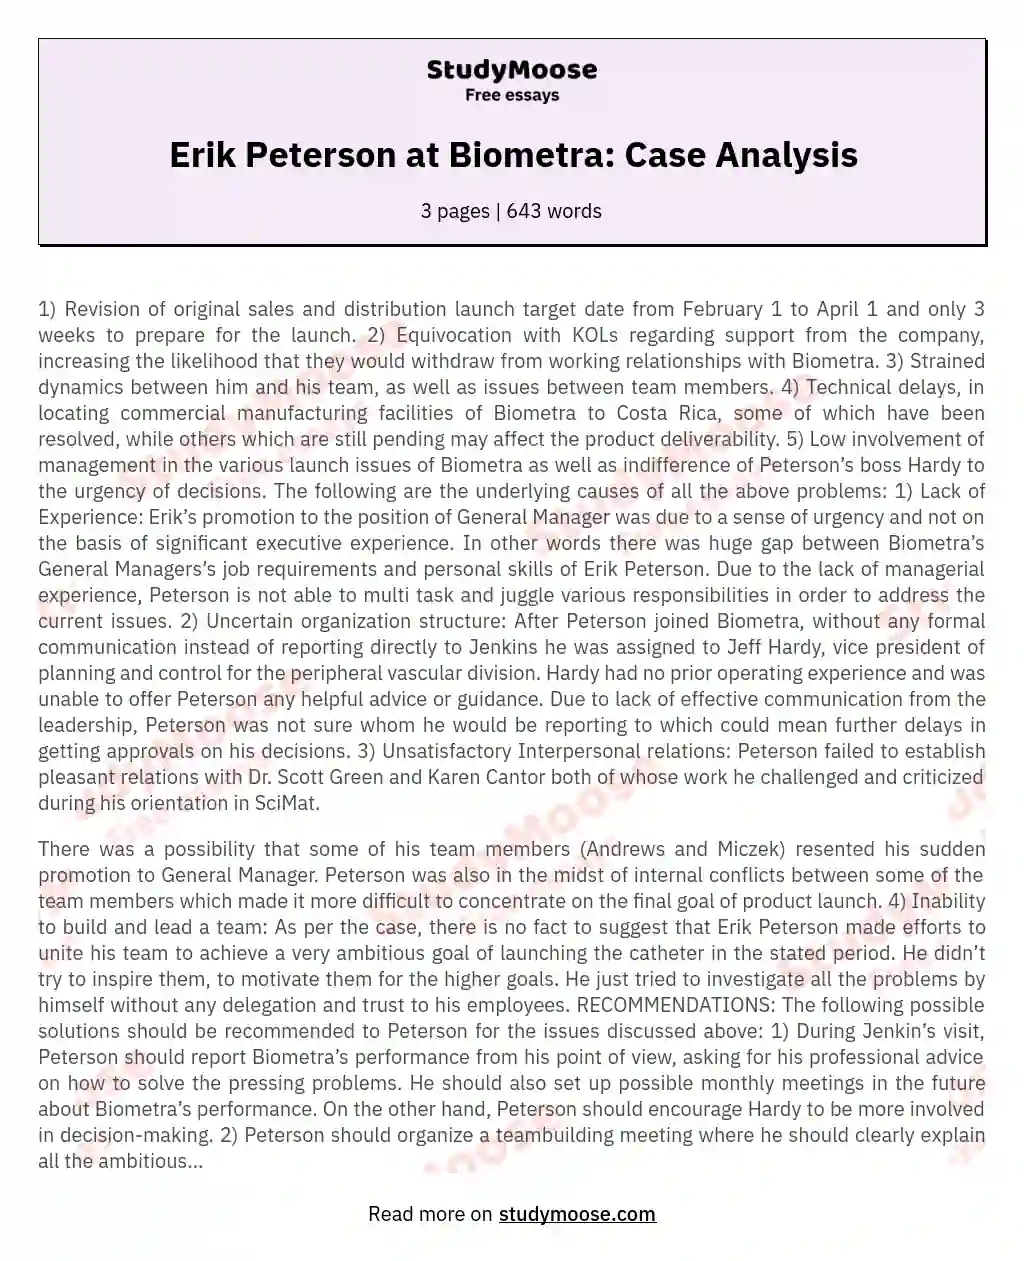 Erik Peterson at Biometra: Case Analysis essay